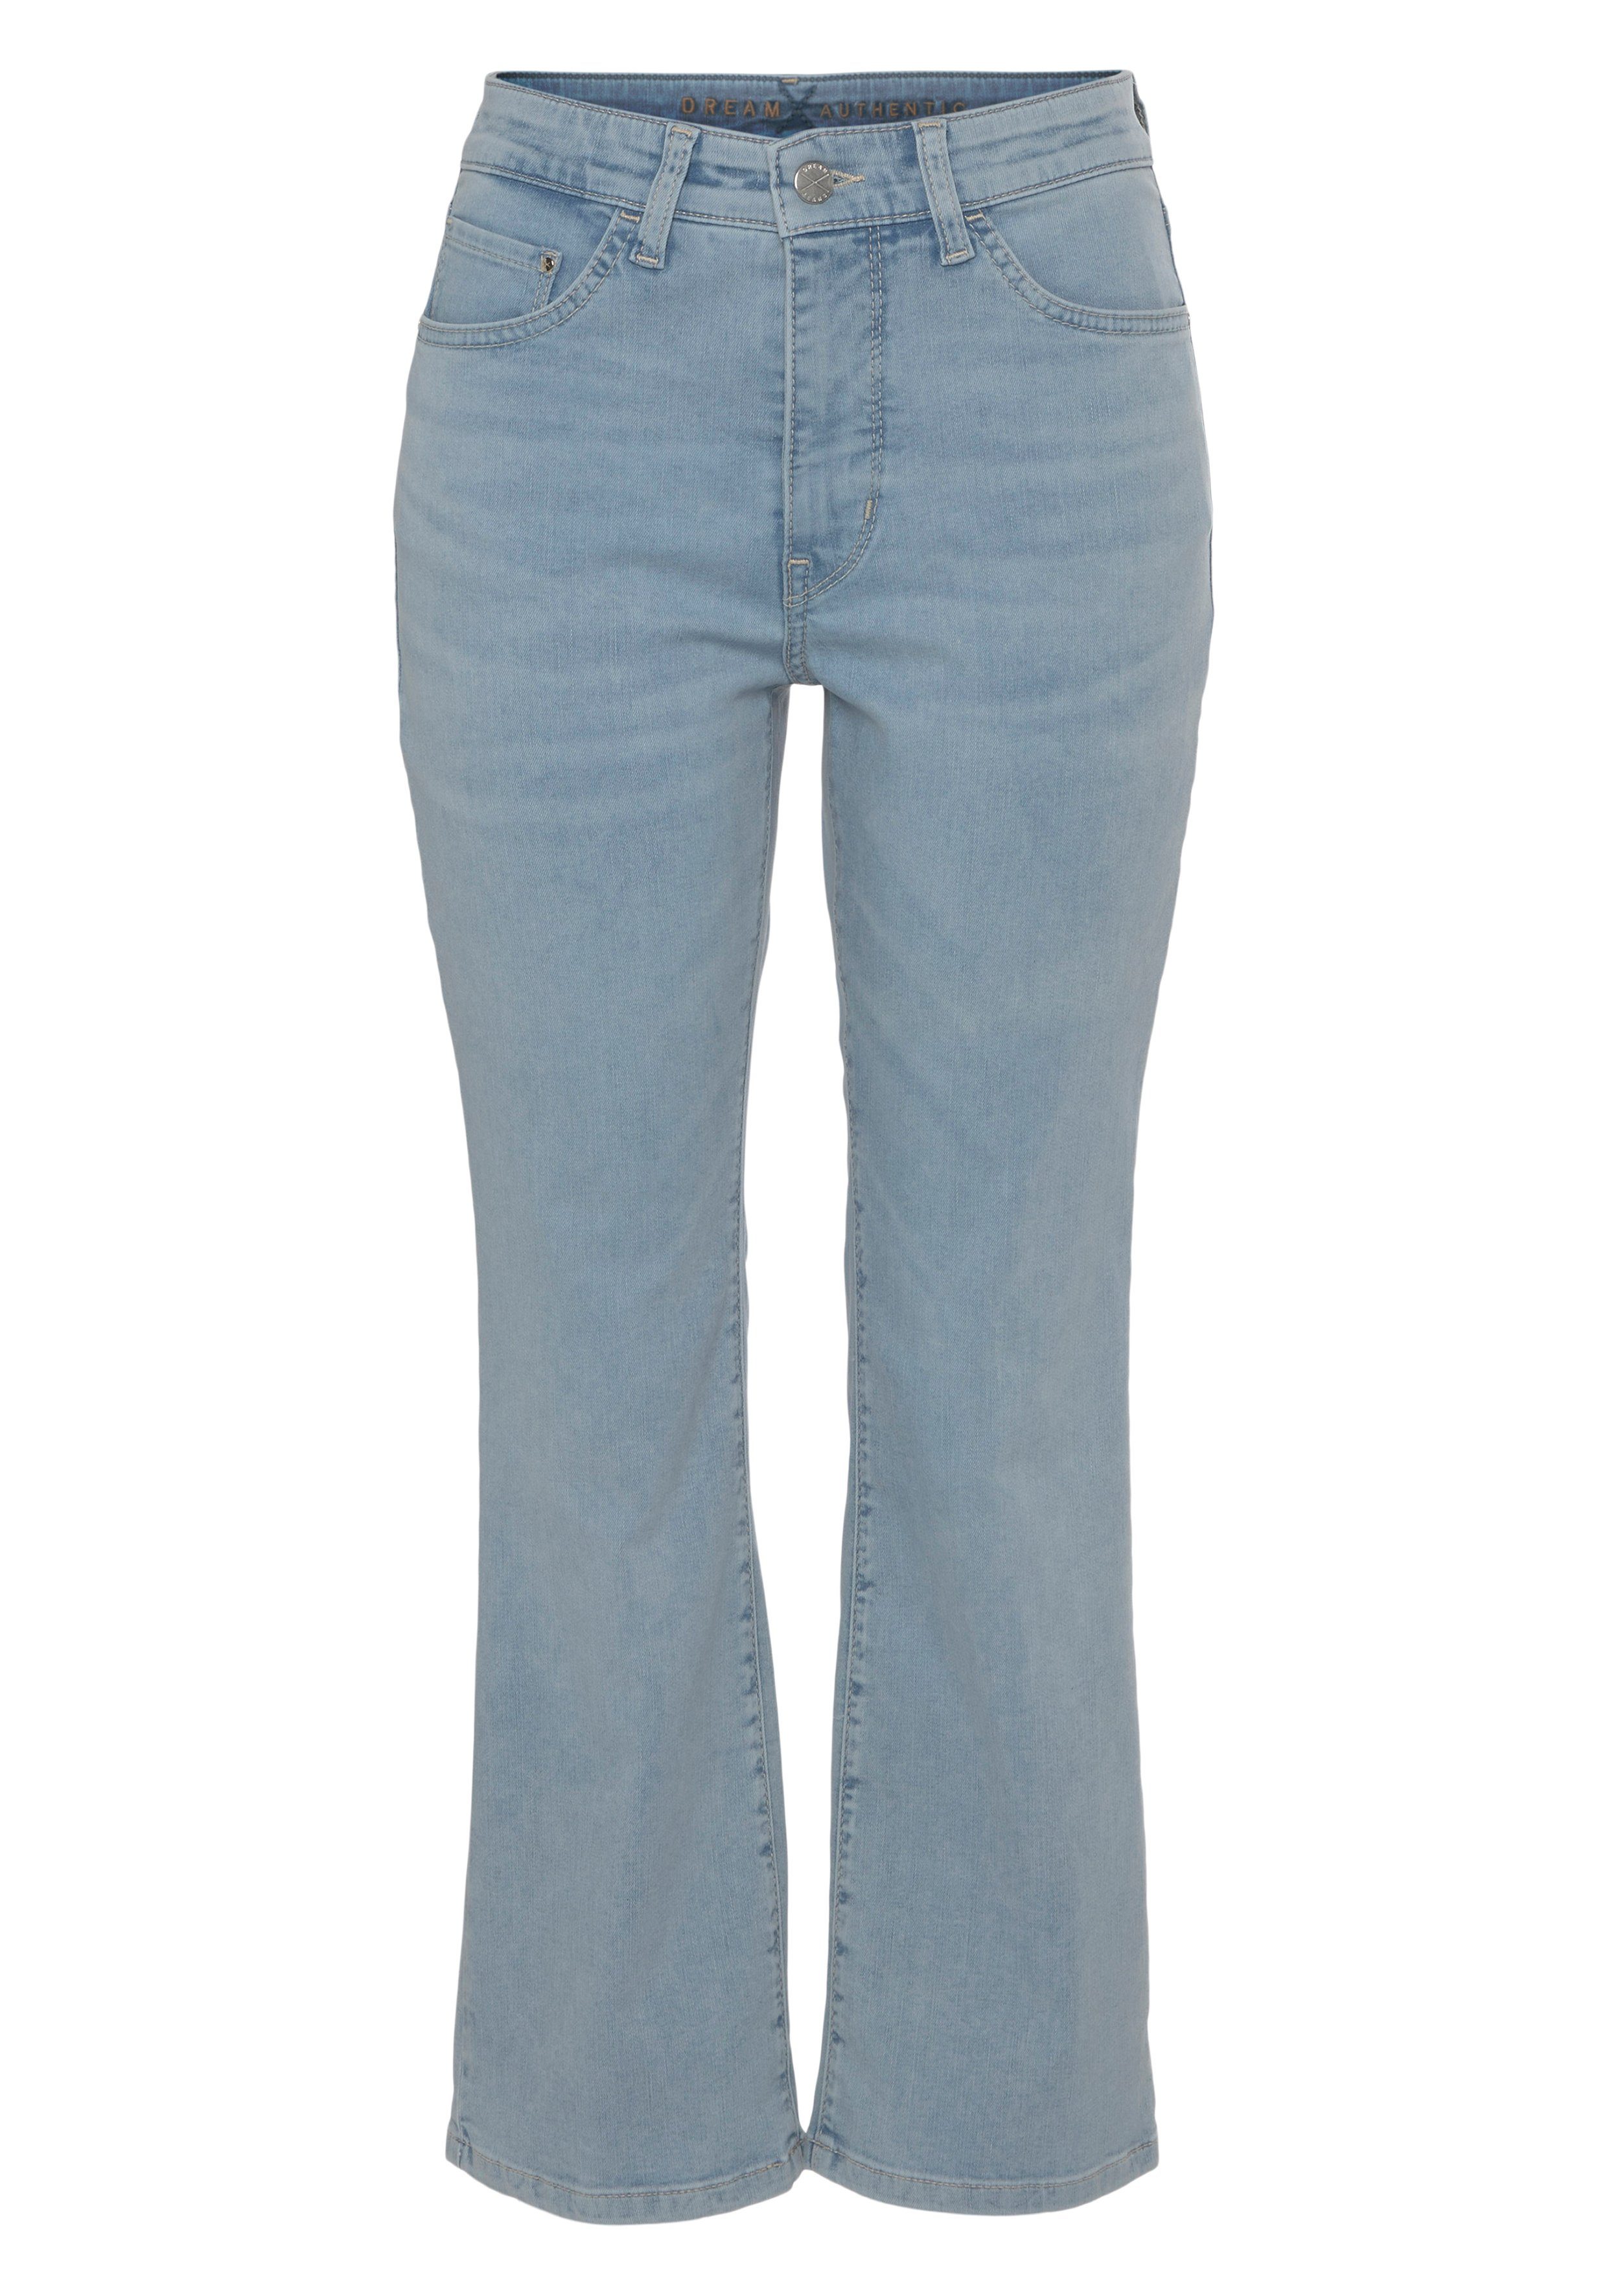 MAC 3/4-Jeans Saum und bleached Dream Kick ausgestellt blue leicht light modisch verkürzt